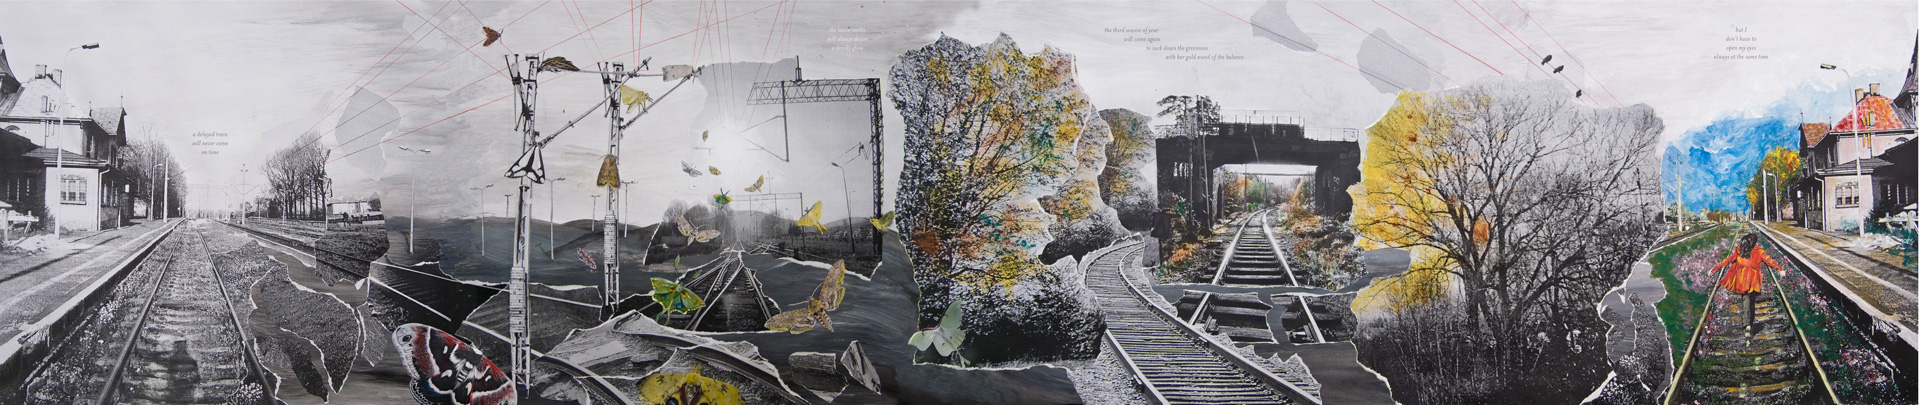 Liwia Klich Illustration A Delayed Train